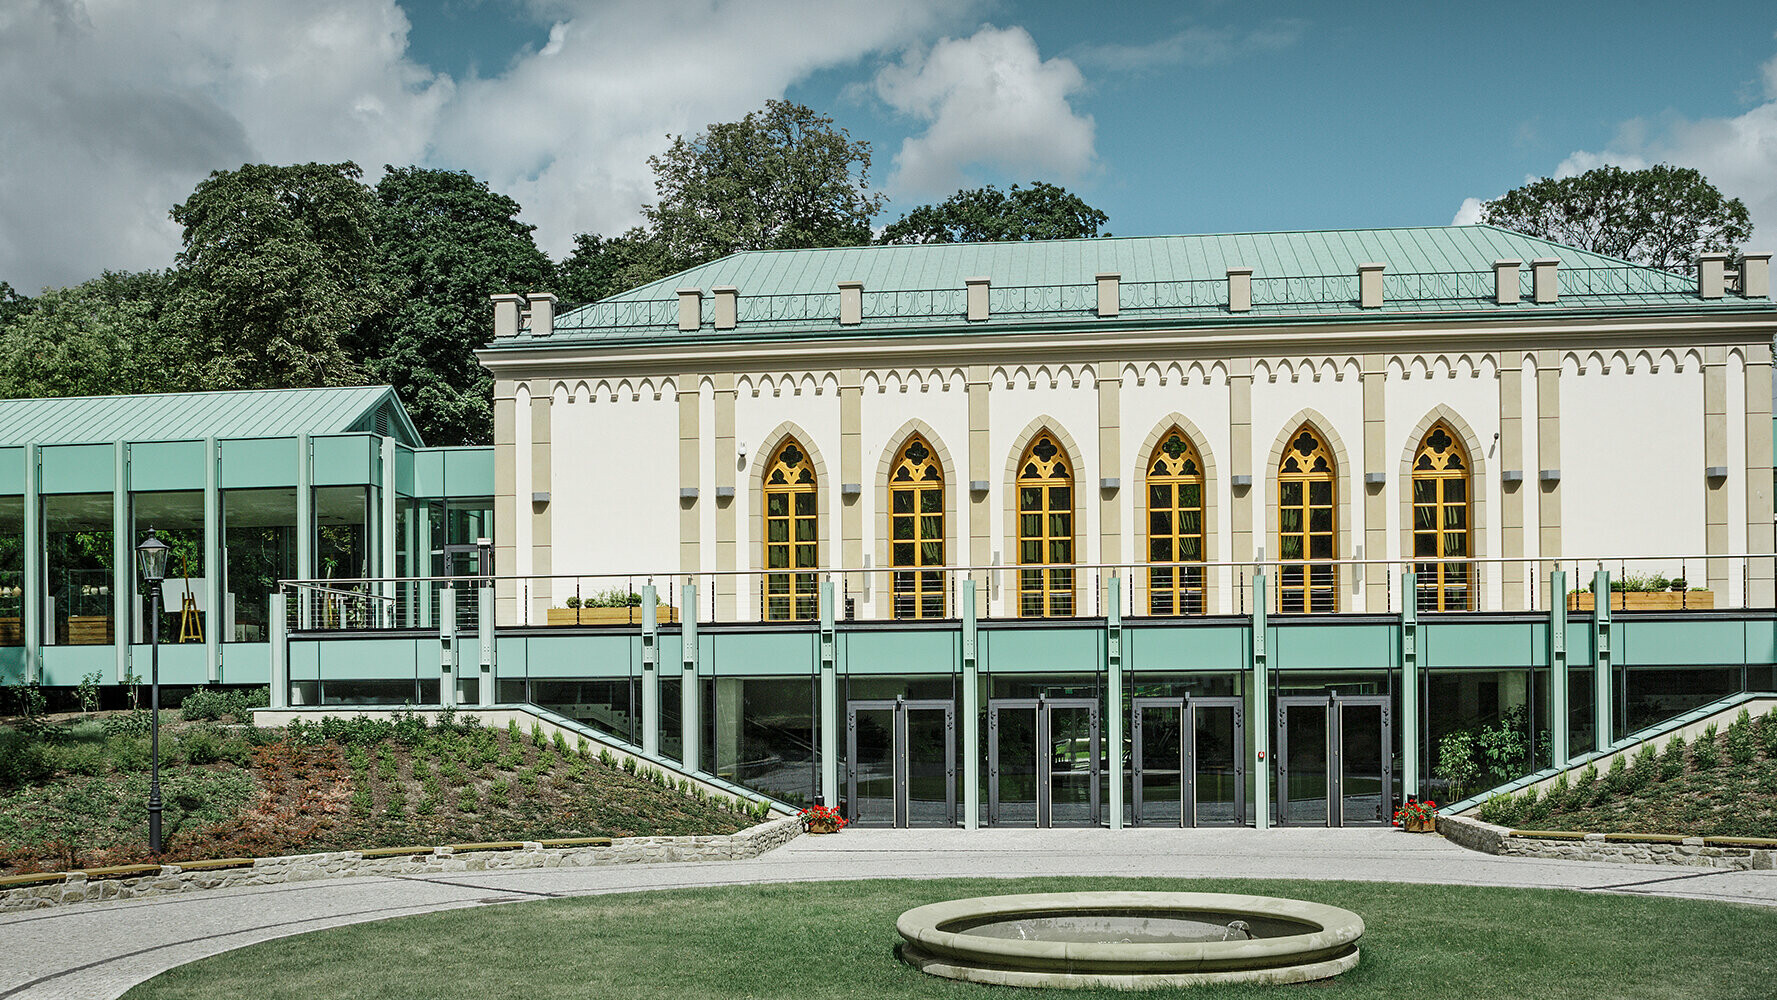 Durante i lavori di ristrutturazione del tetto, la copertura del museo polacco a Opinogóra è stata realizzata con Prefalz e Falzonal nel colore patina verde.